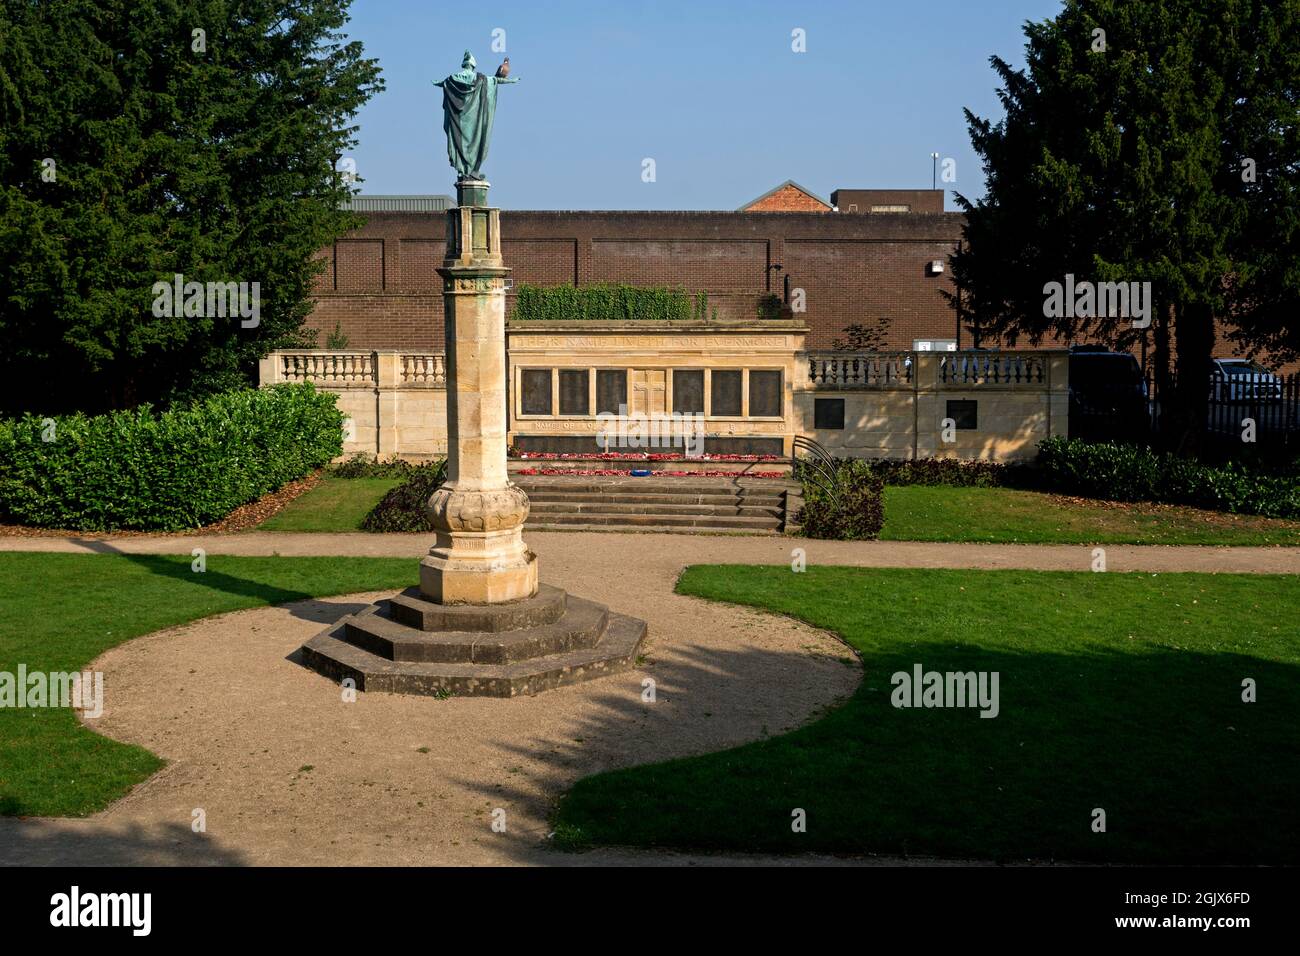 Le mémorial de guerre et la statue de l'Ange de la Miséricorde, Castle Hill, Hinckley, Leicestershire, Angleterre, ROYAUME-UNI Banque D'Images